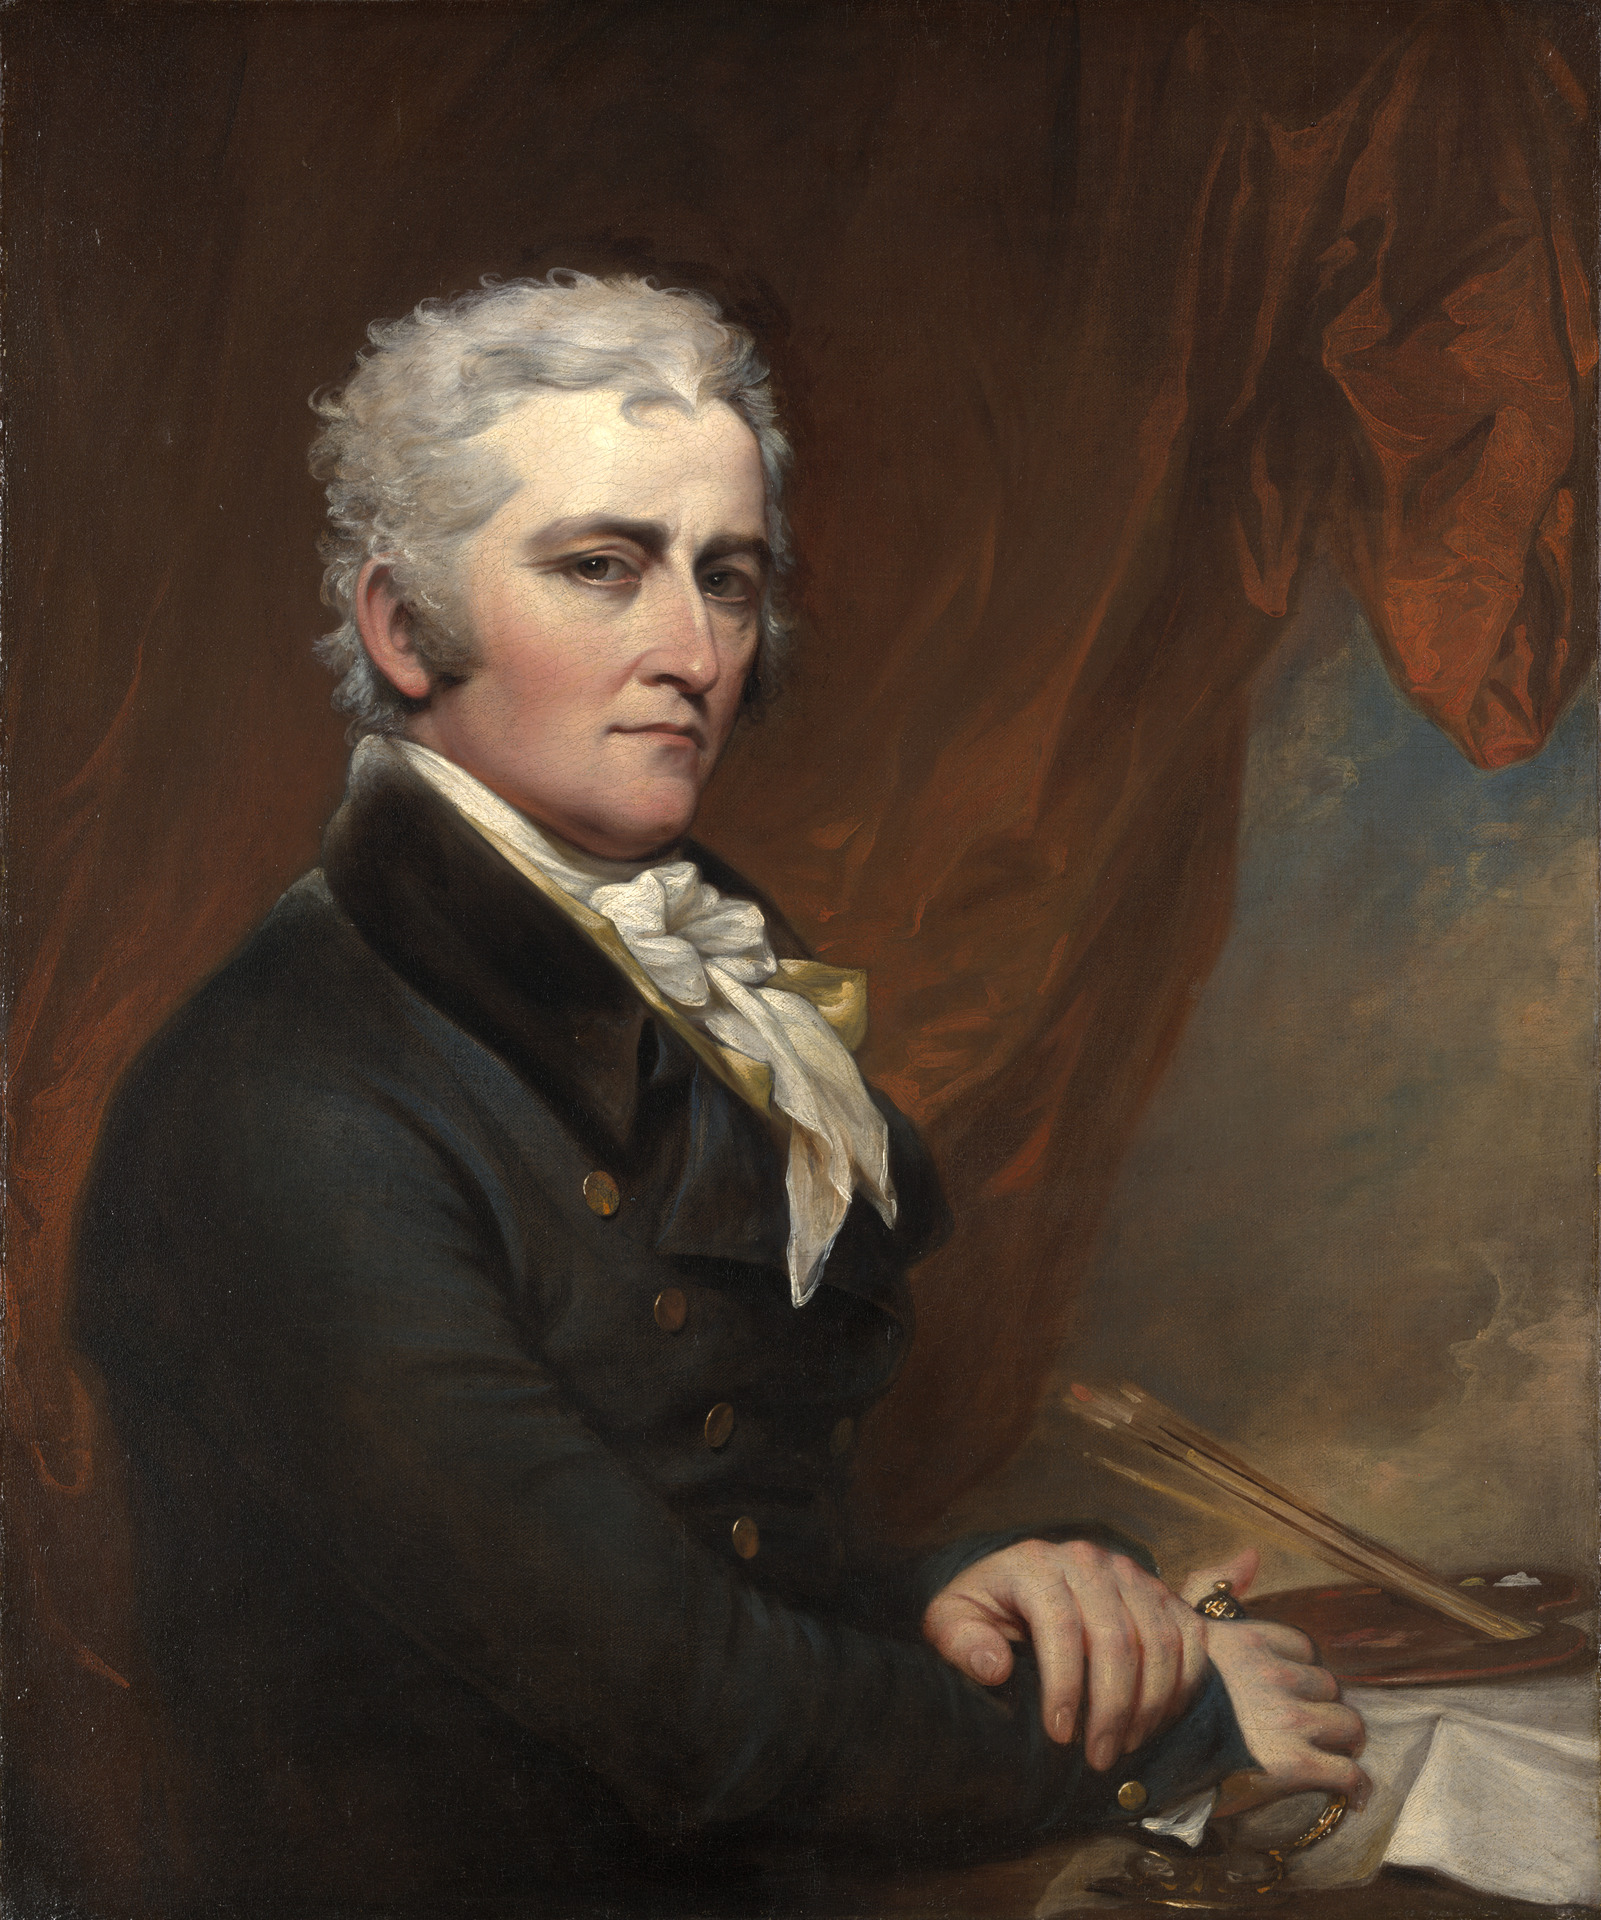 Джон Трамбулл - 1756 - 1843